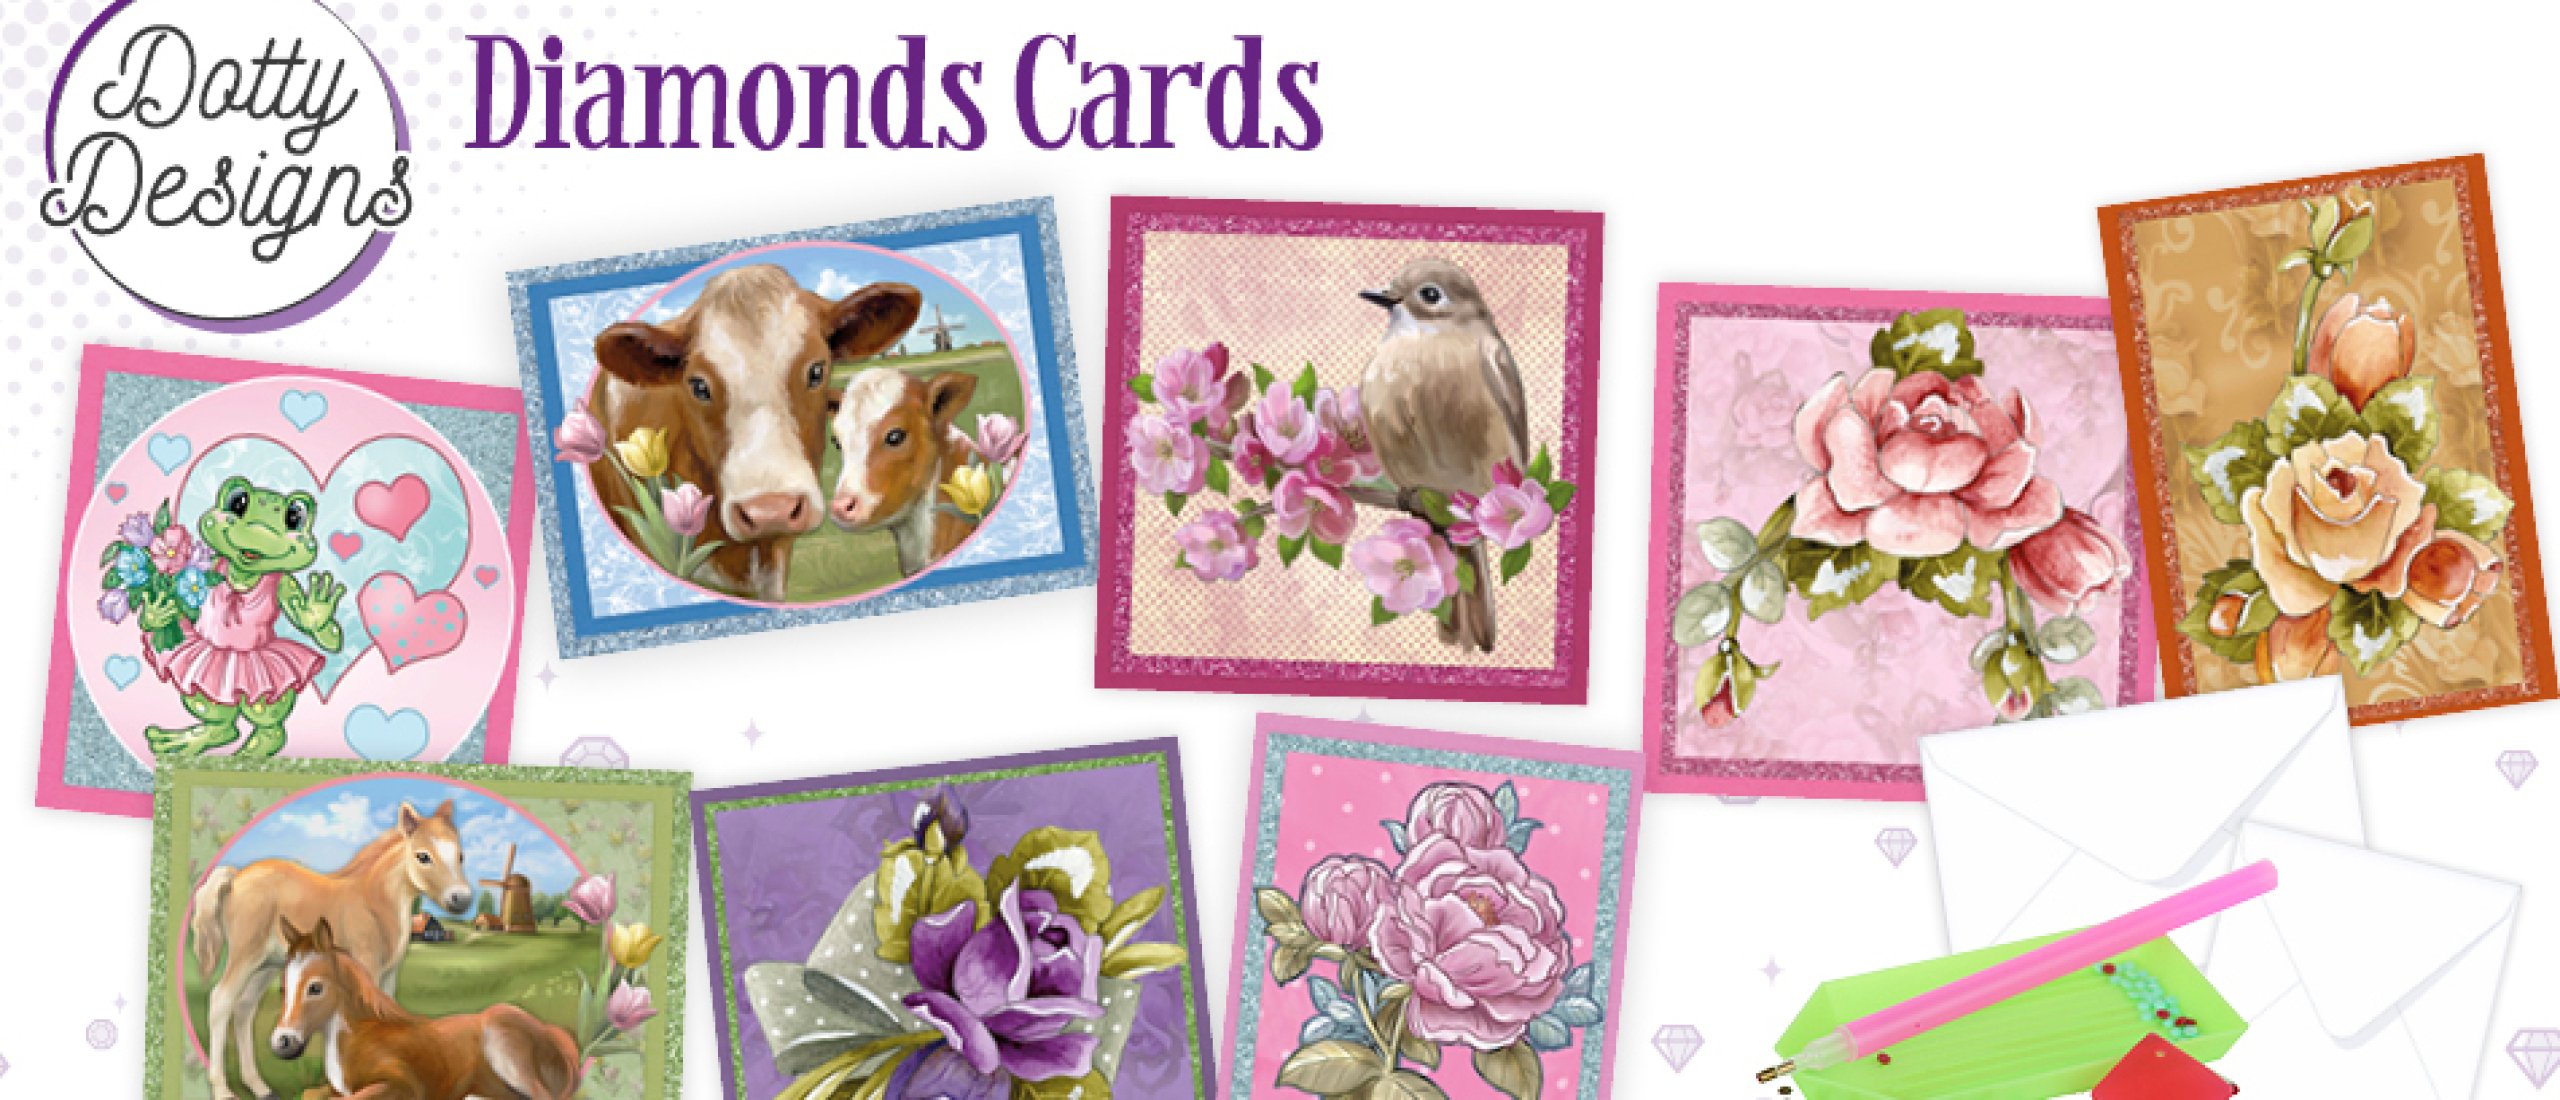 Nieuwe Diamonds Cards: Dieren en bloemen!